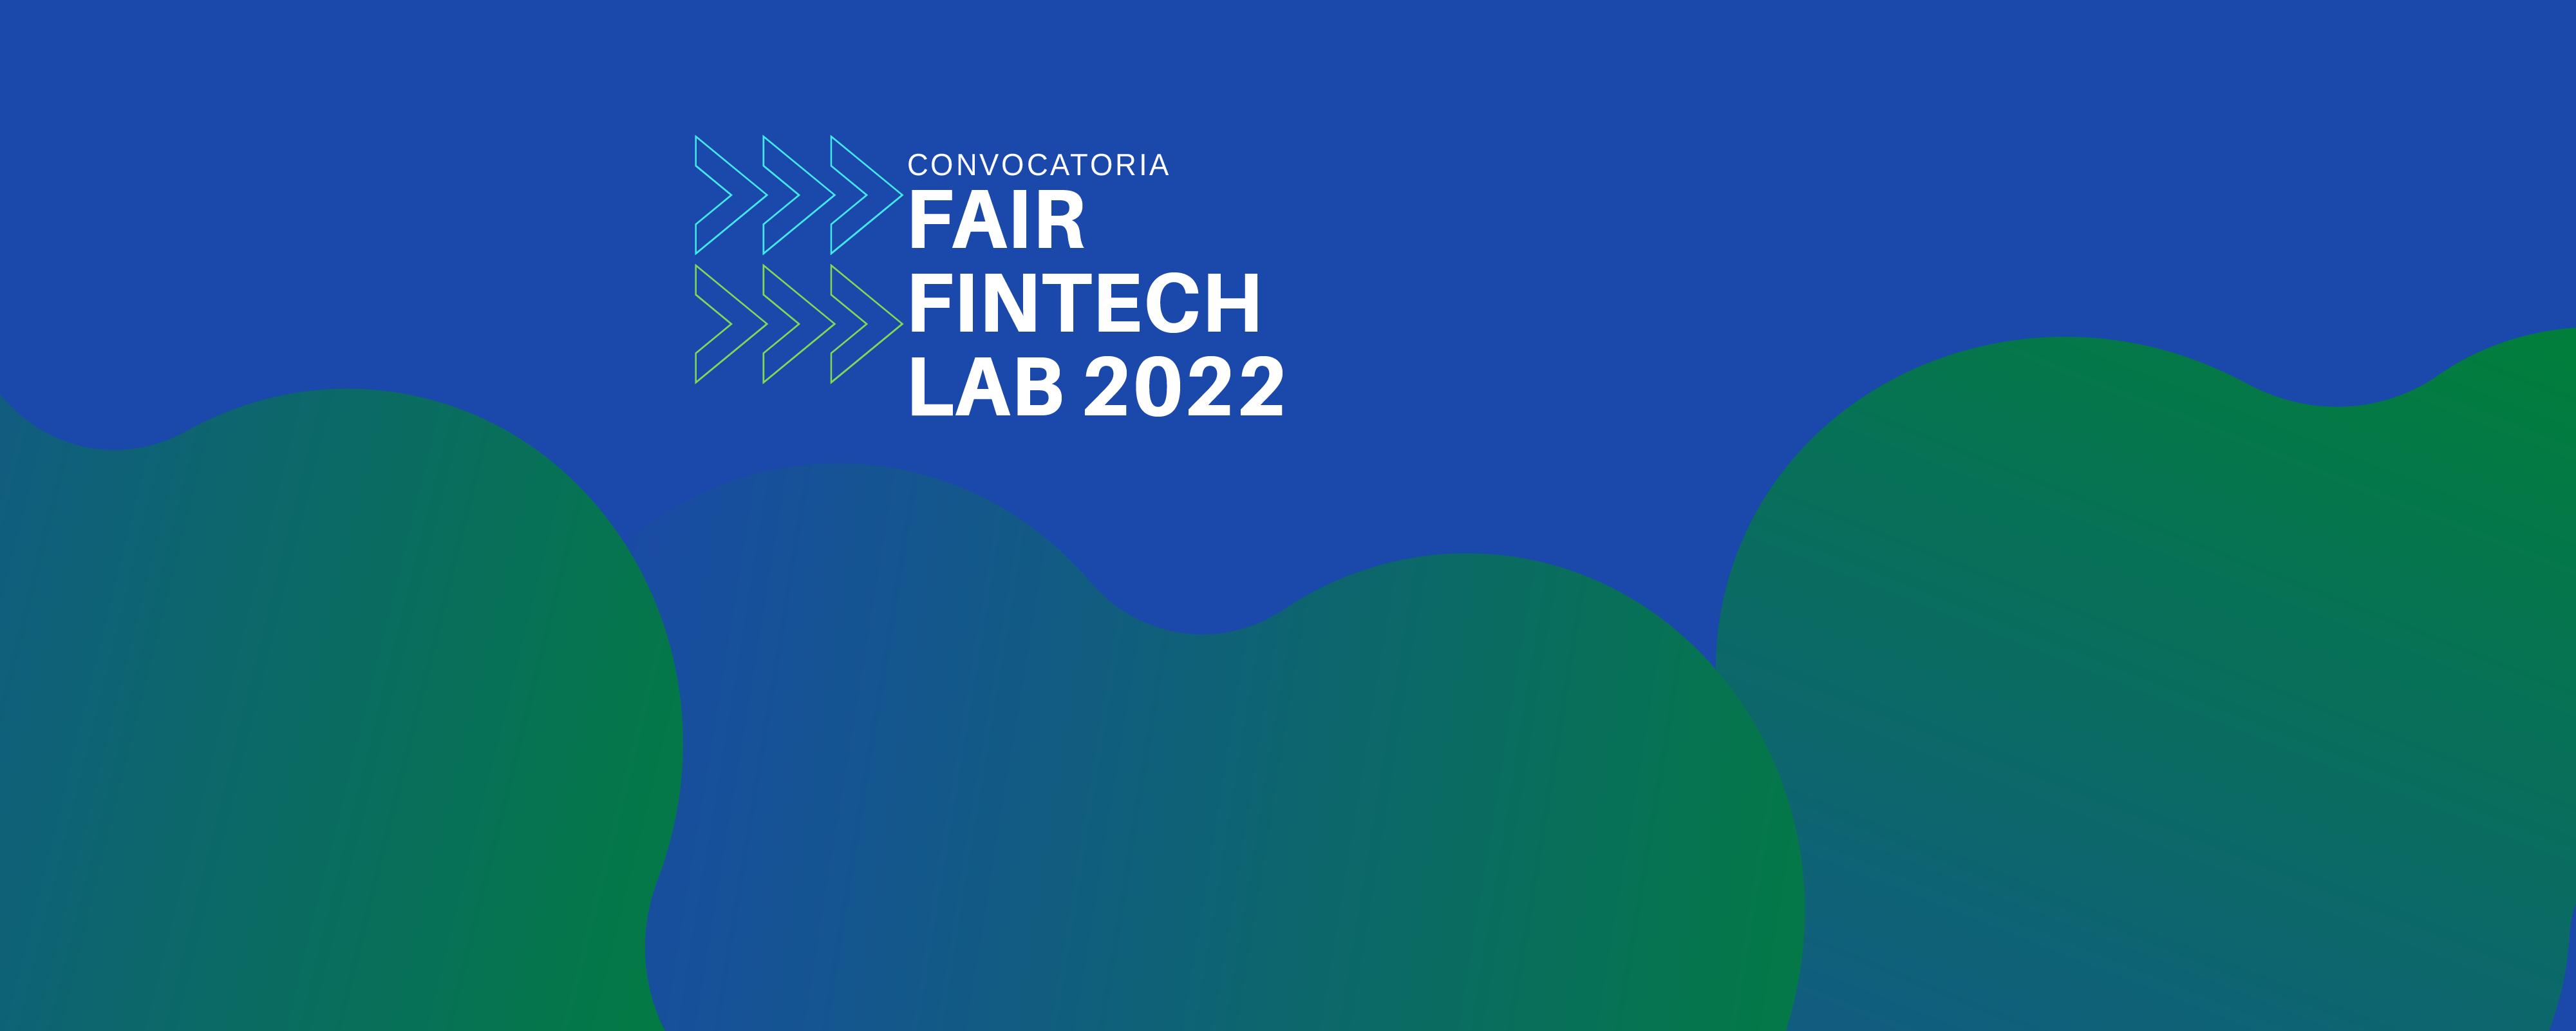 Fair Fintech Lab